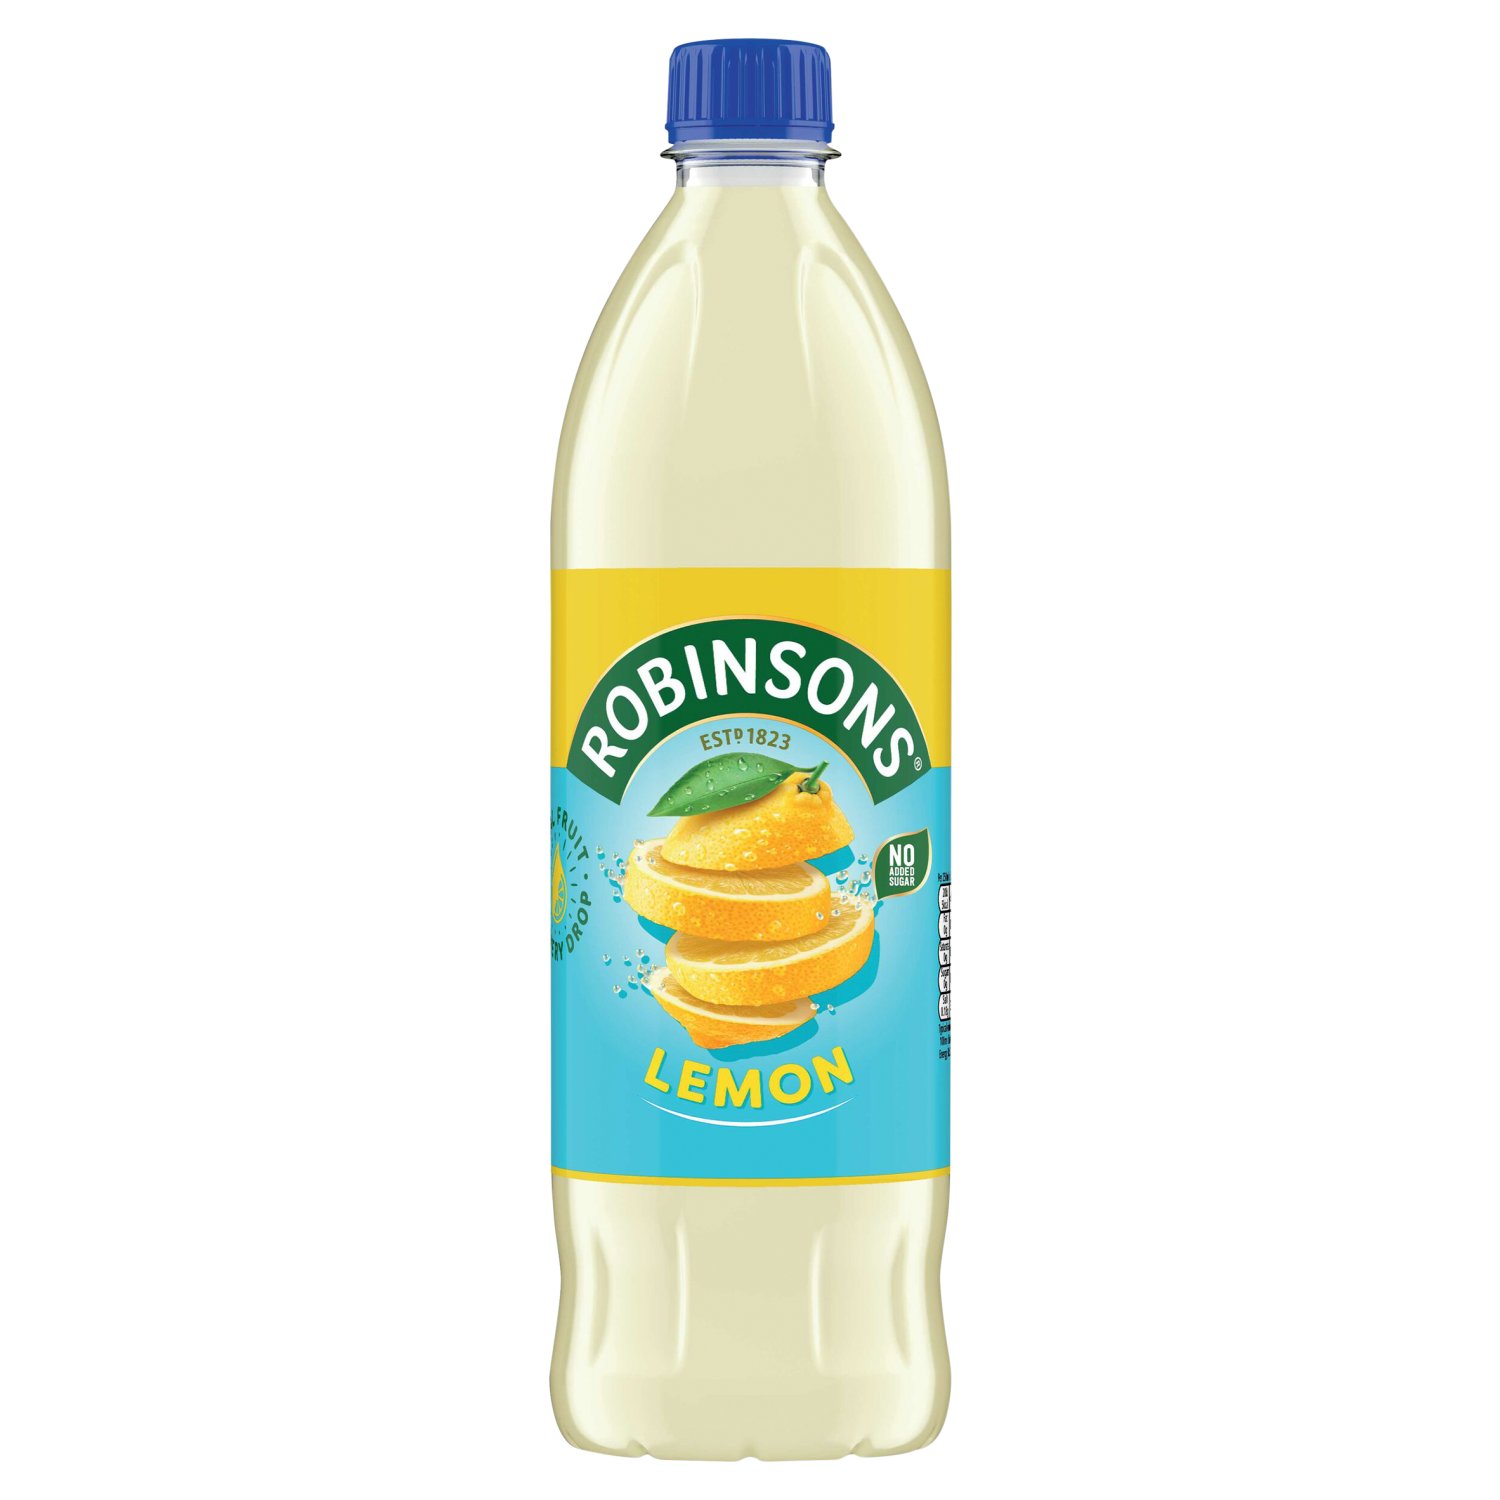 Robinsons Lemon No Added Sugar Squash (1 L)